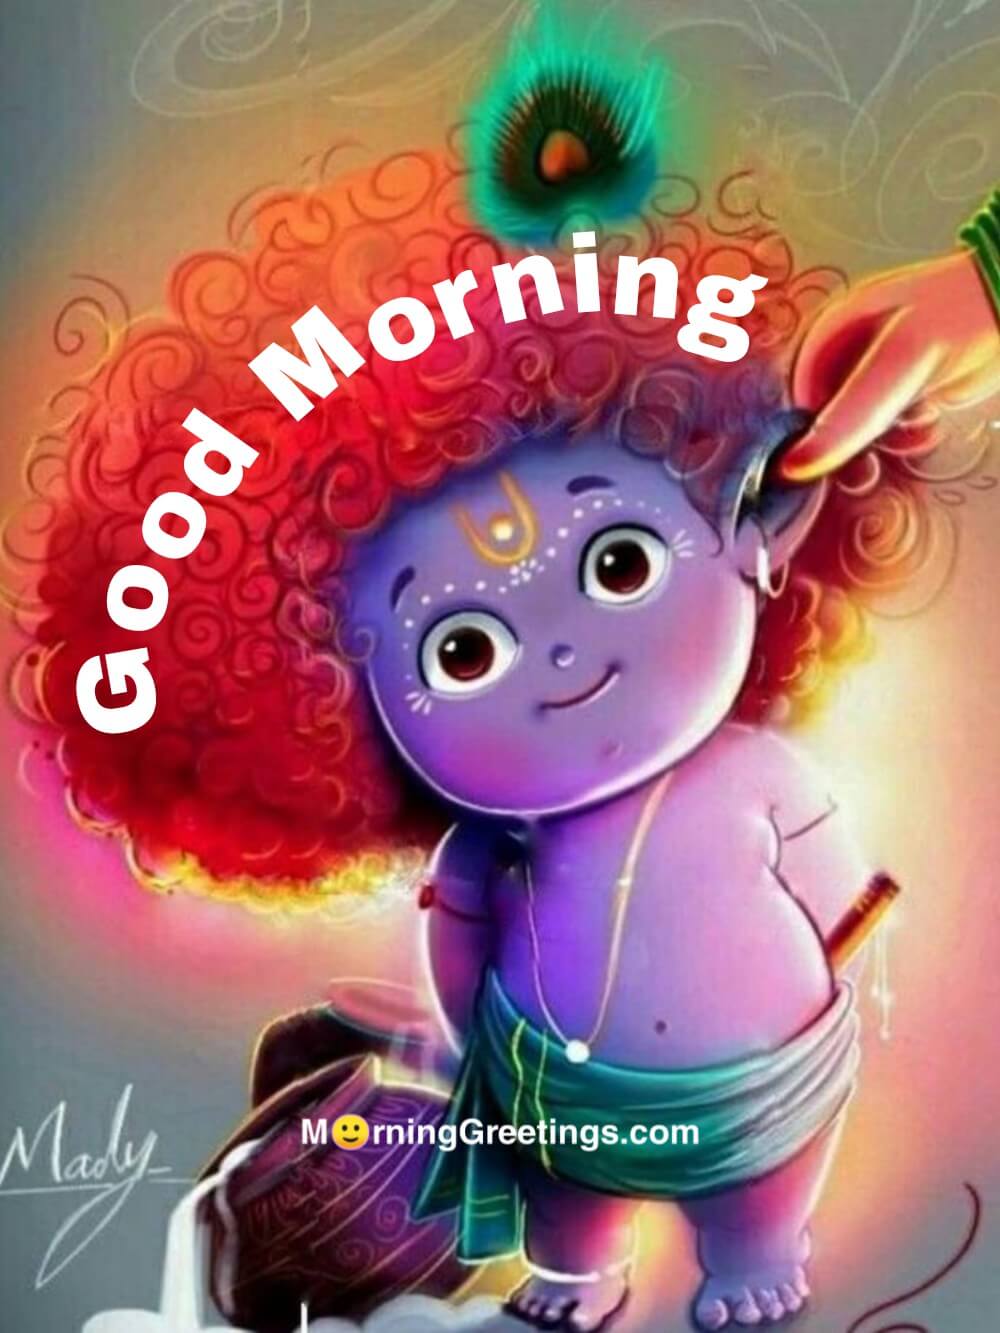 25 Bal Krishna Morning Greetings - Morning Greetings – Morning ...